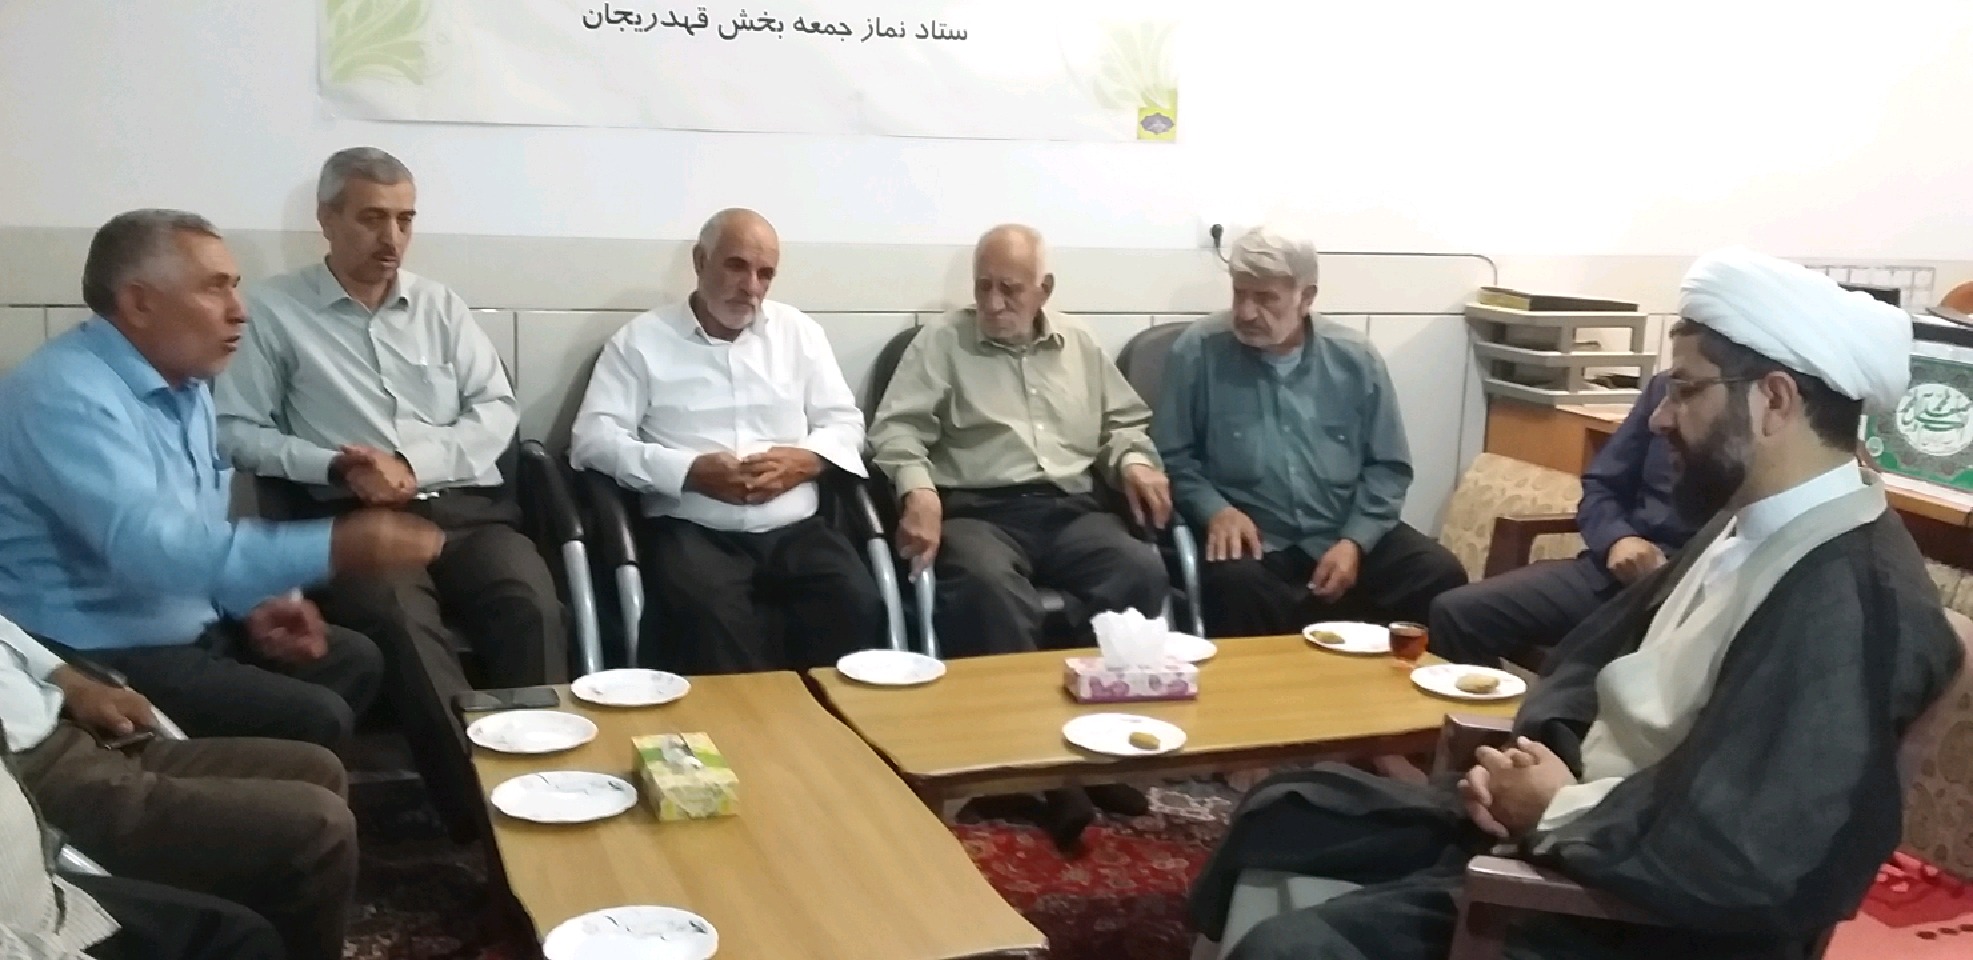 دیدار تعدادی از مردم شهر قهدریجان با امام جمعه محترم شهر با موضوعاوضاع شهرداری و  شورا های اسلامی شهر